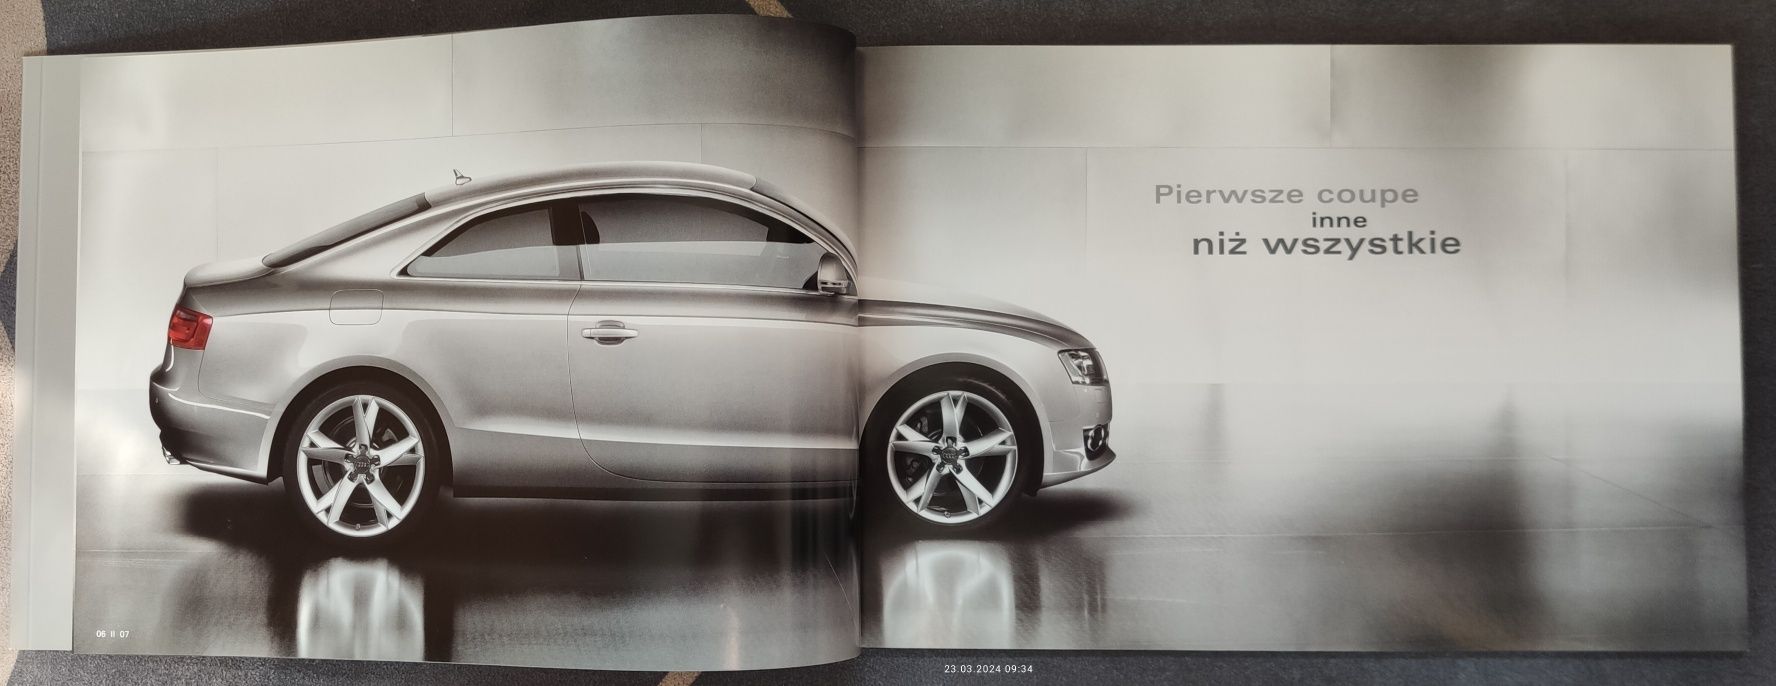 Audi A5 prospekt j. polski